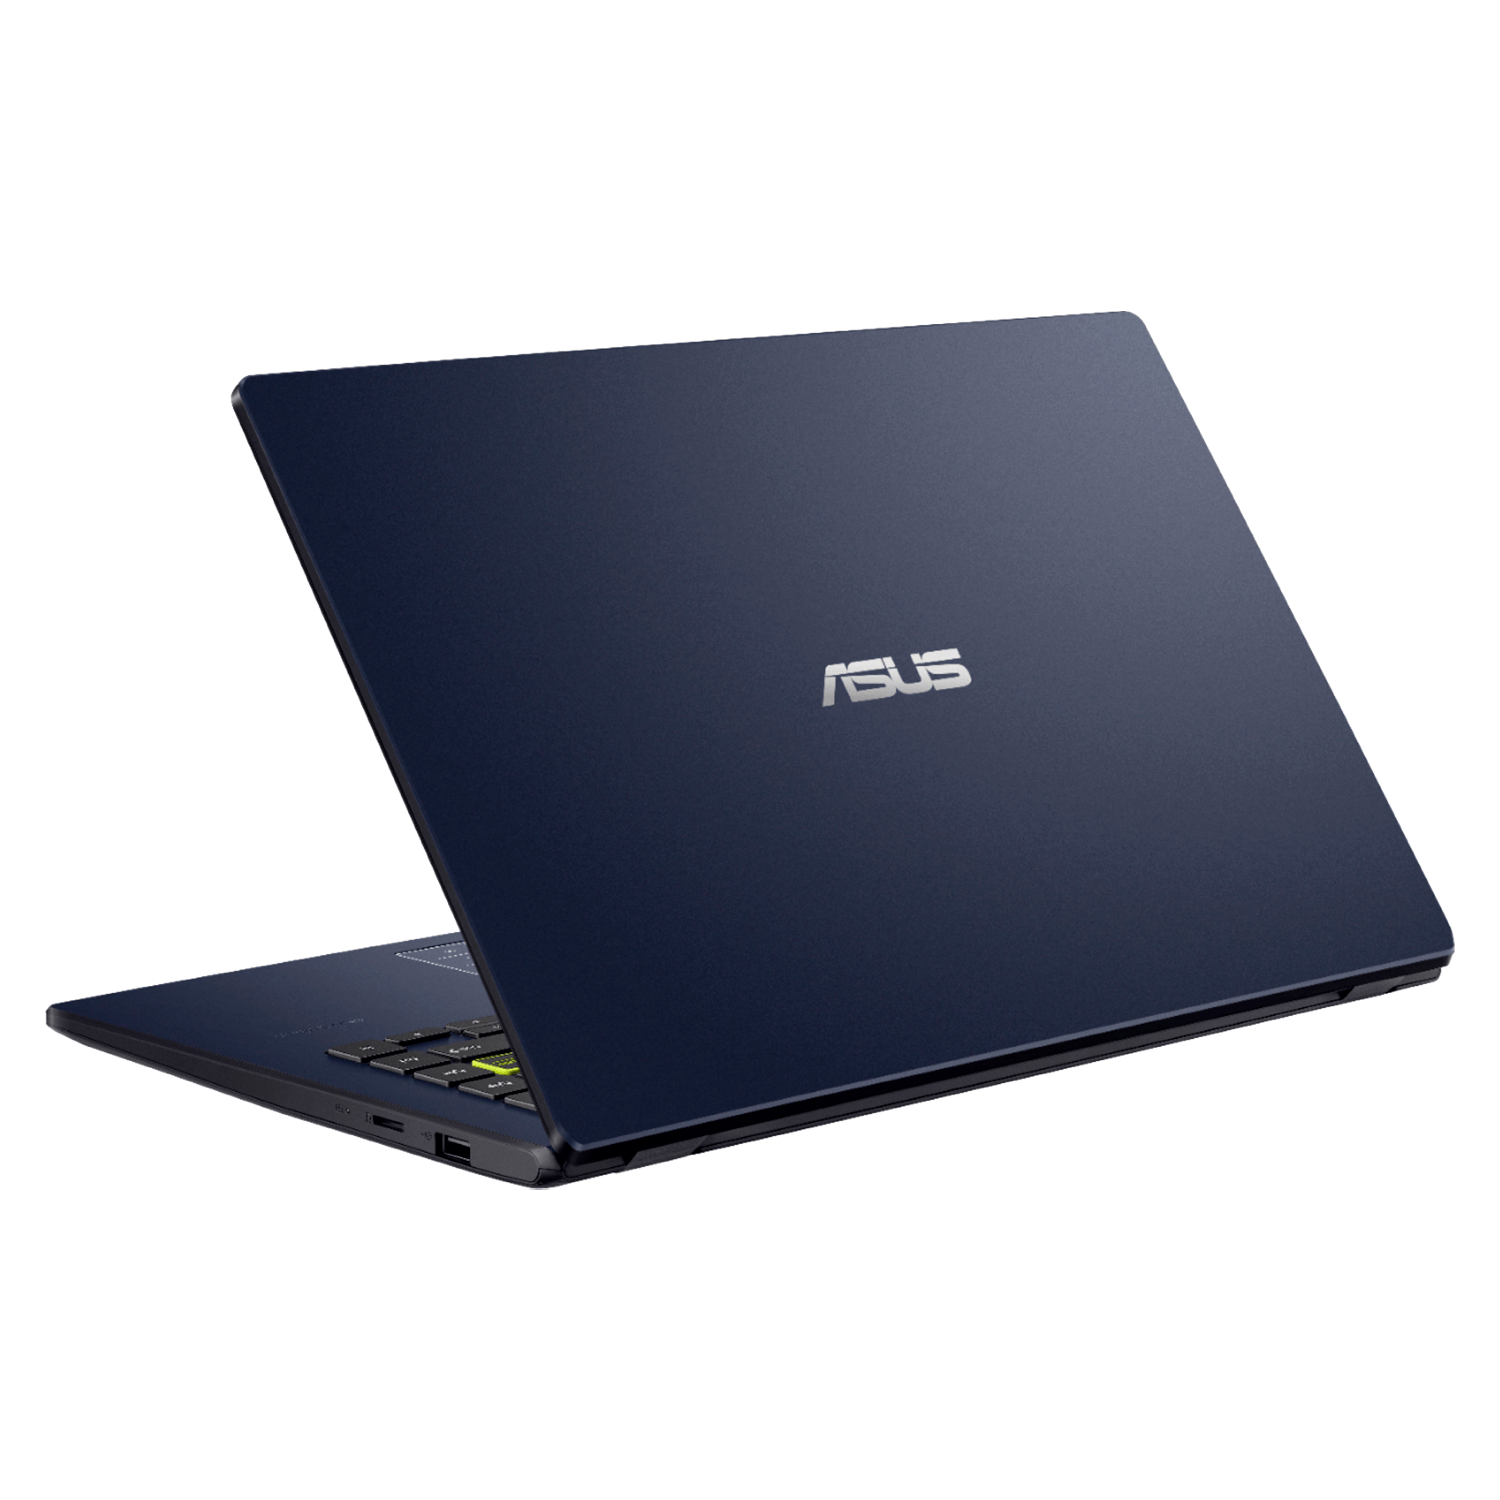 Notebook Asus R410MA-212-BK128 Intel Celeron N4020 4GB / 128GB / Windows 10